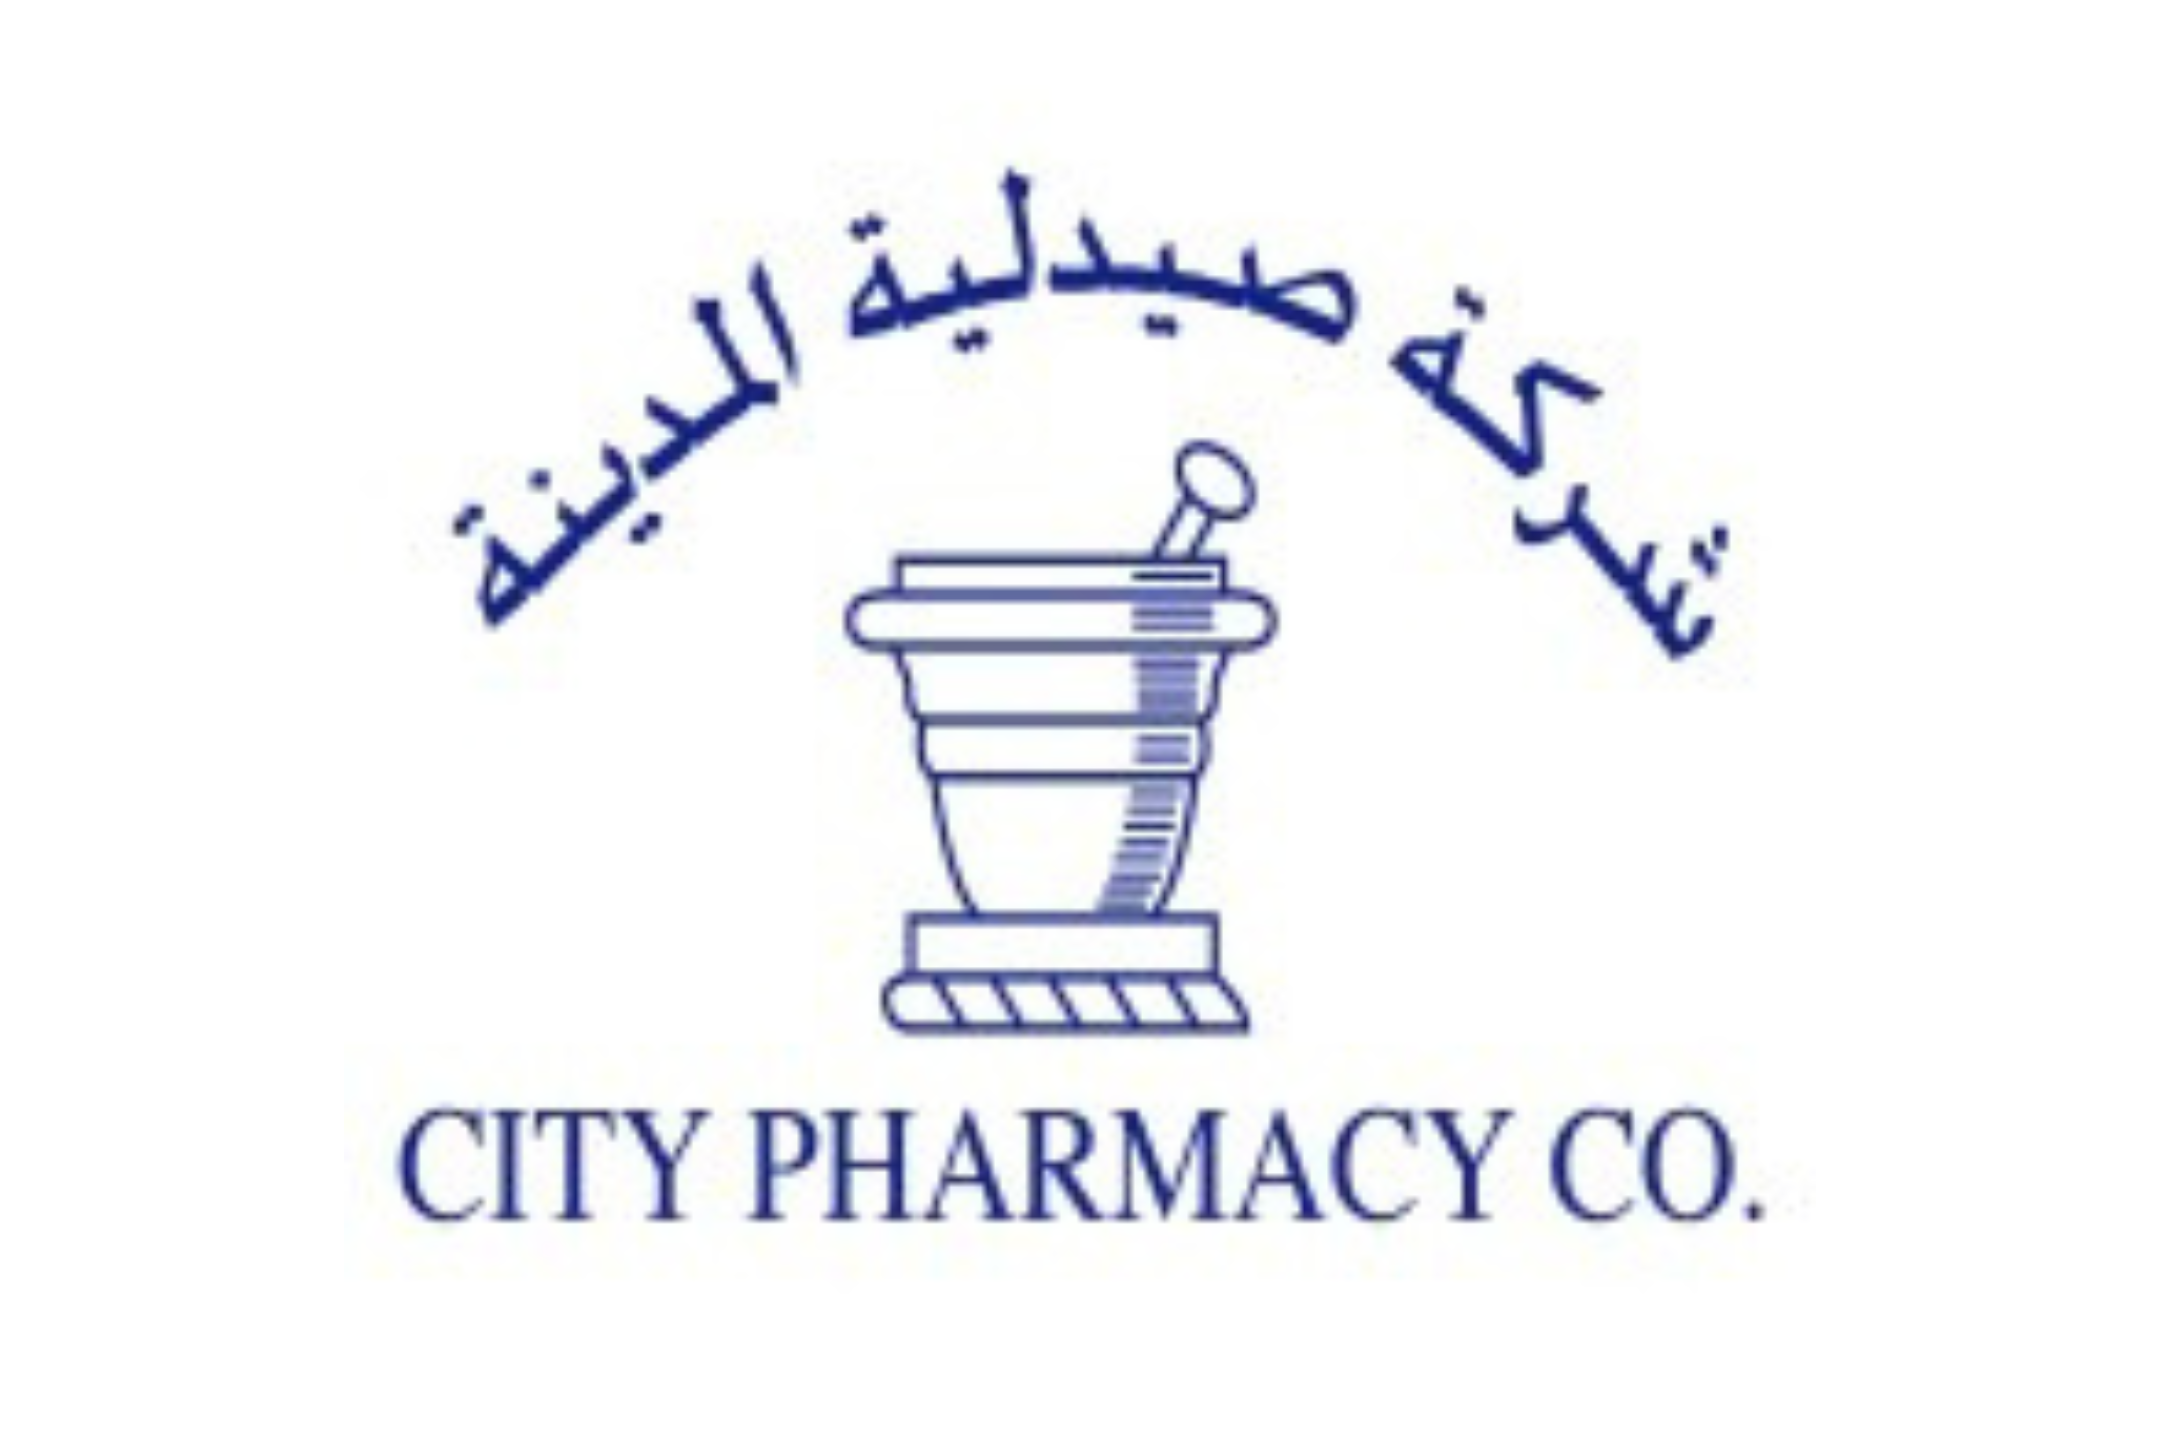 Exhibitor - City Pharmacy